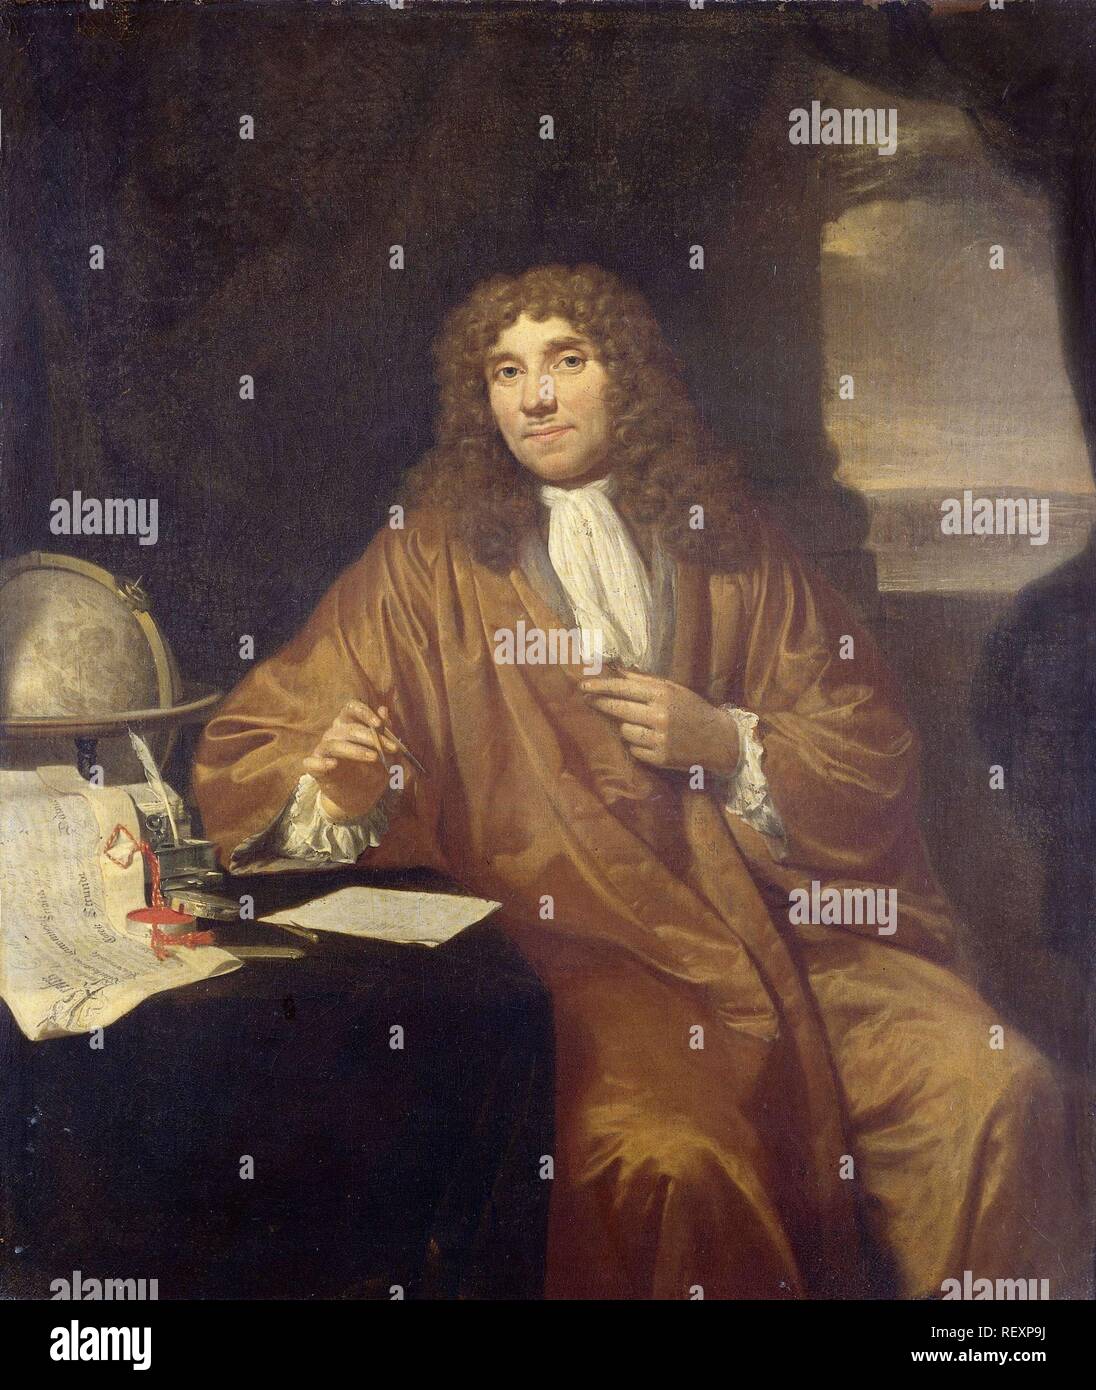 Portrait of Anthonie van Leeuwenhoek, Natural Philosopher and Zoologist in Delft. Dating: 1680 - 1686. Measurements: h 56 cm × w 47.5 cm. Museum: Rijksmuseum, Amsterdam. Author: Jan Verkolje (I). Stock Photo